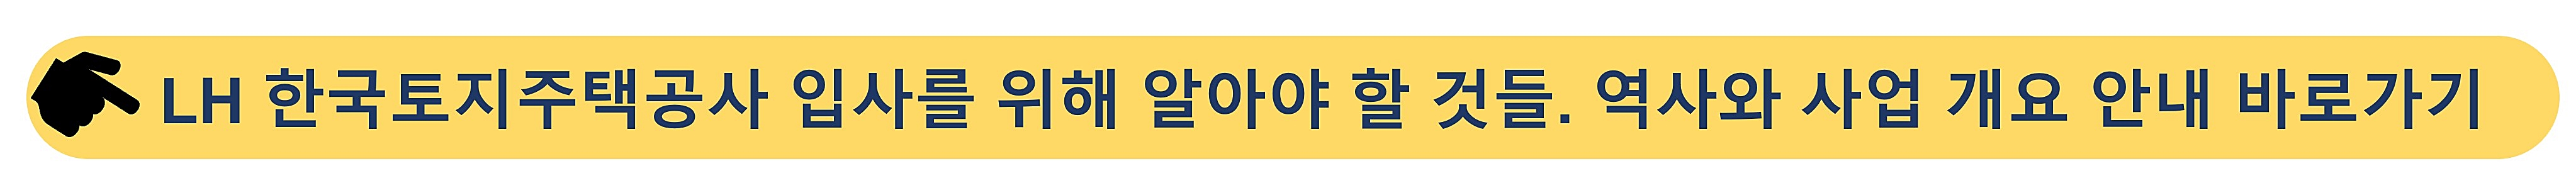 한국토지주택공사-LH 채용